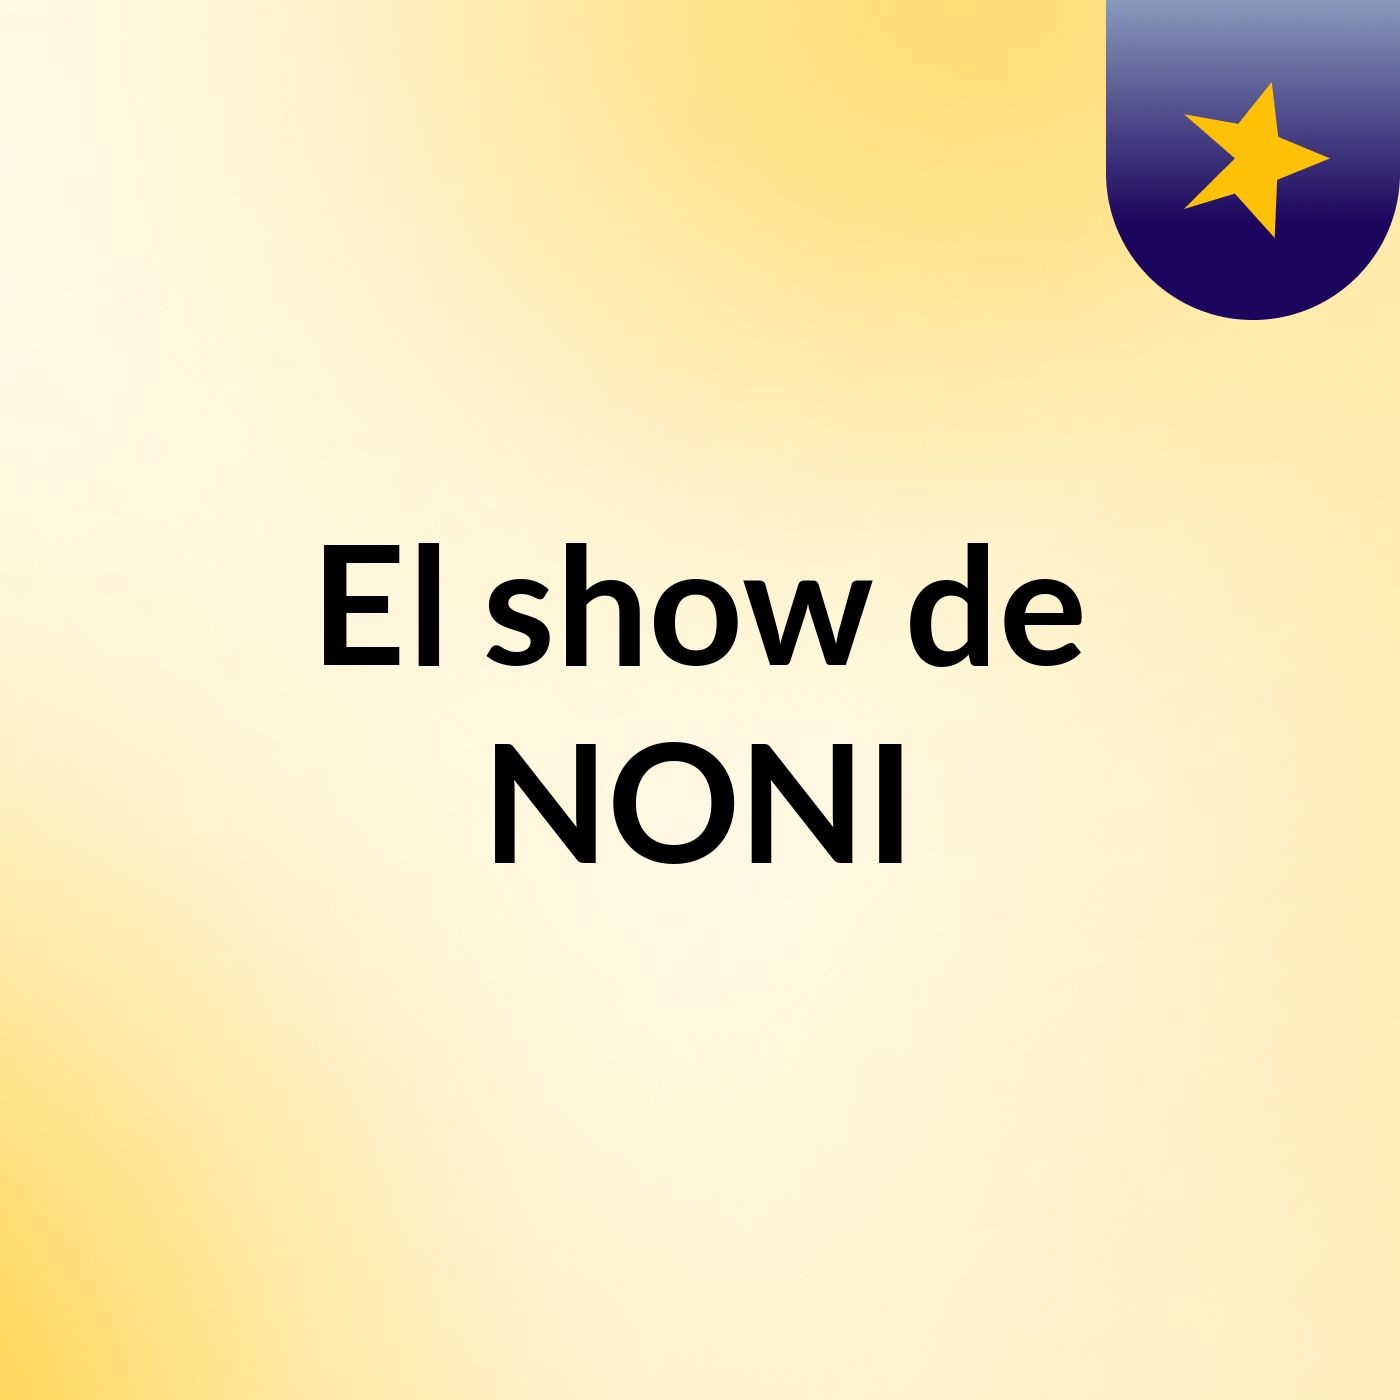 El show de NONI